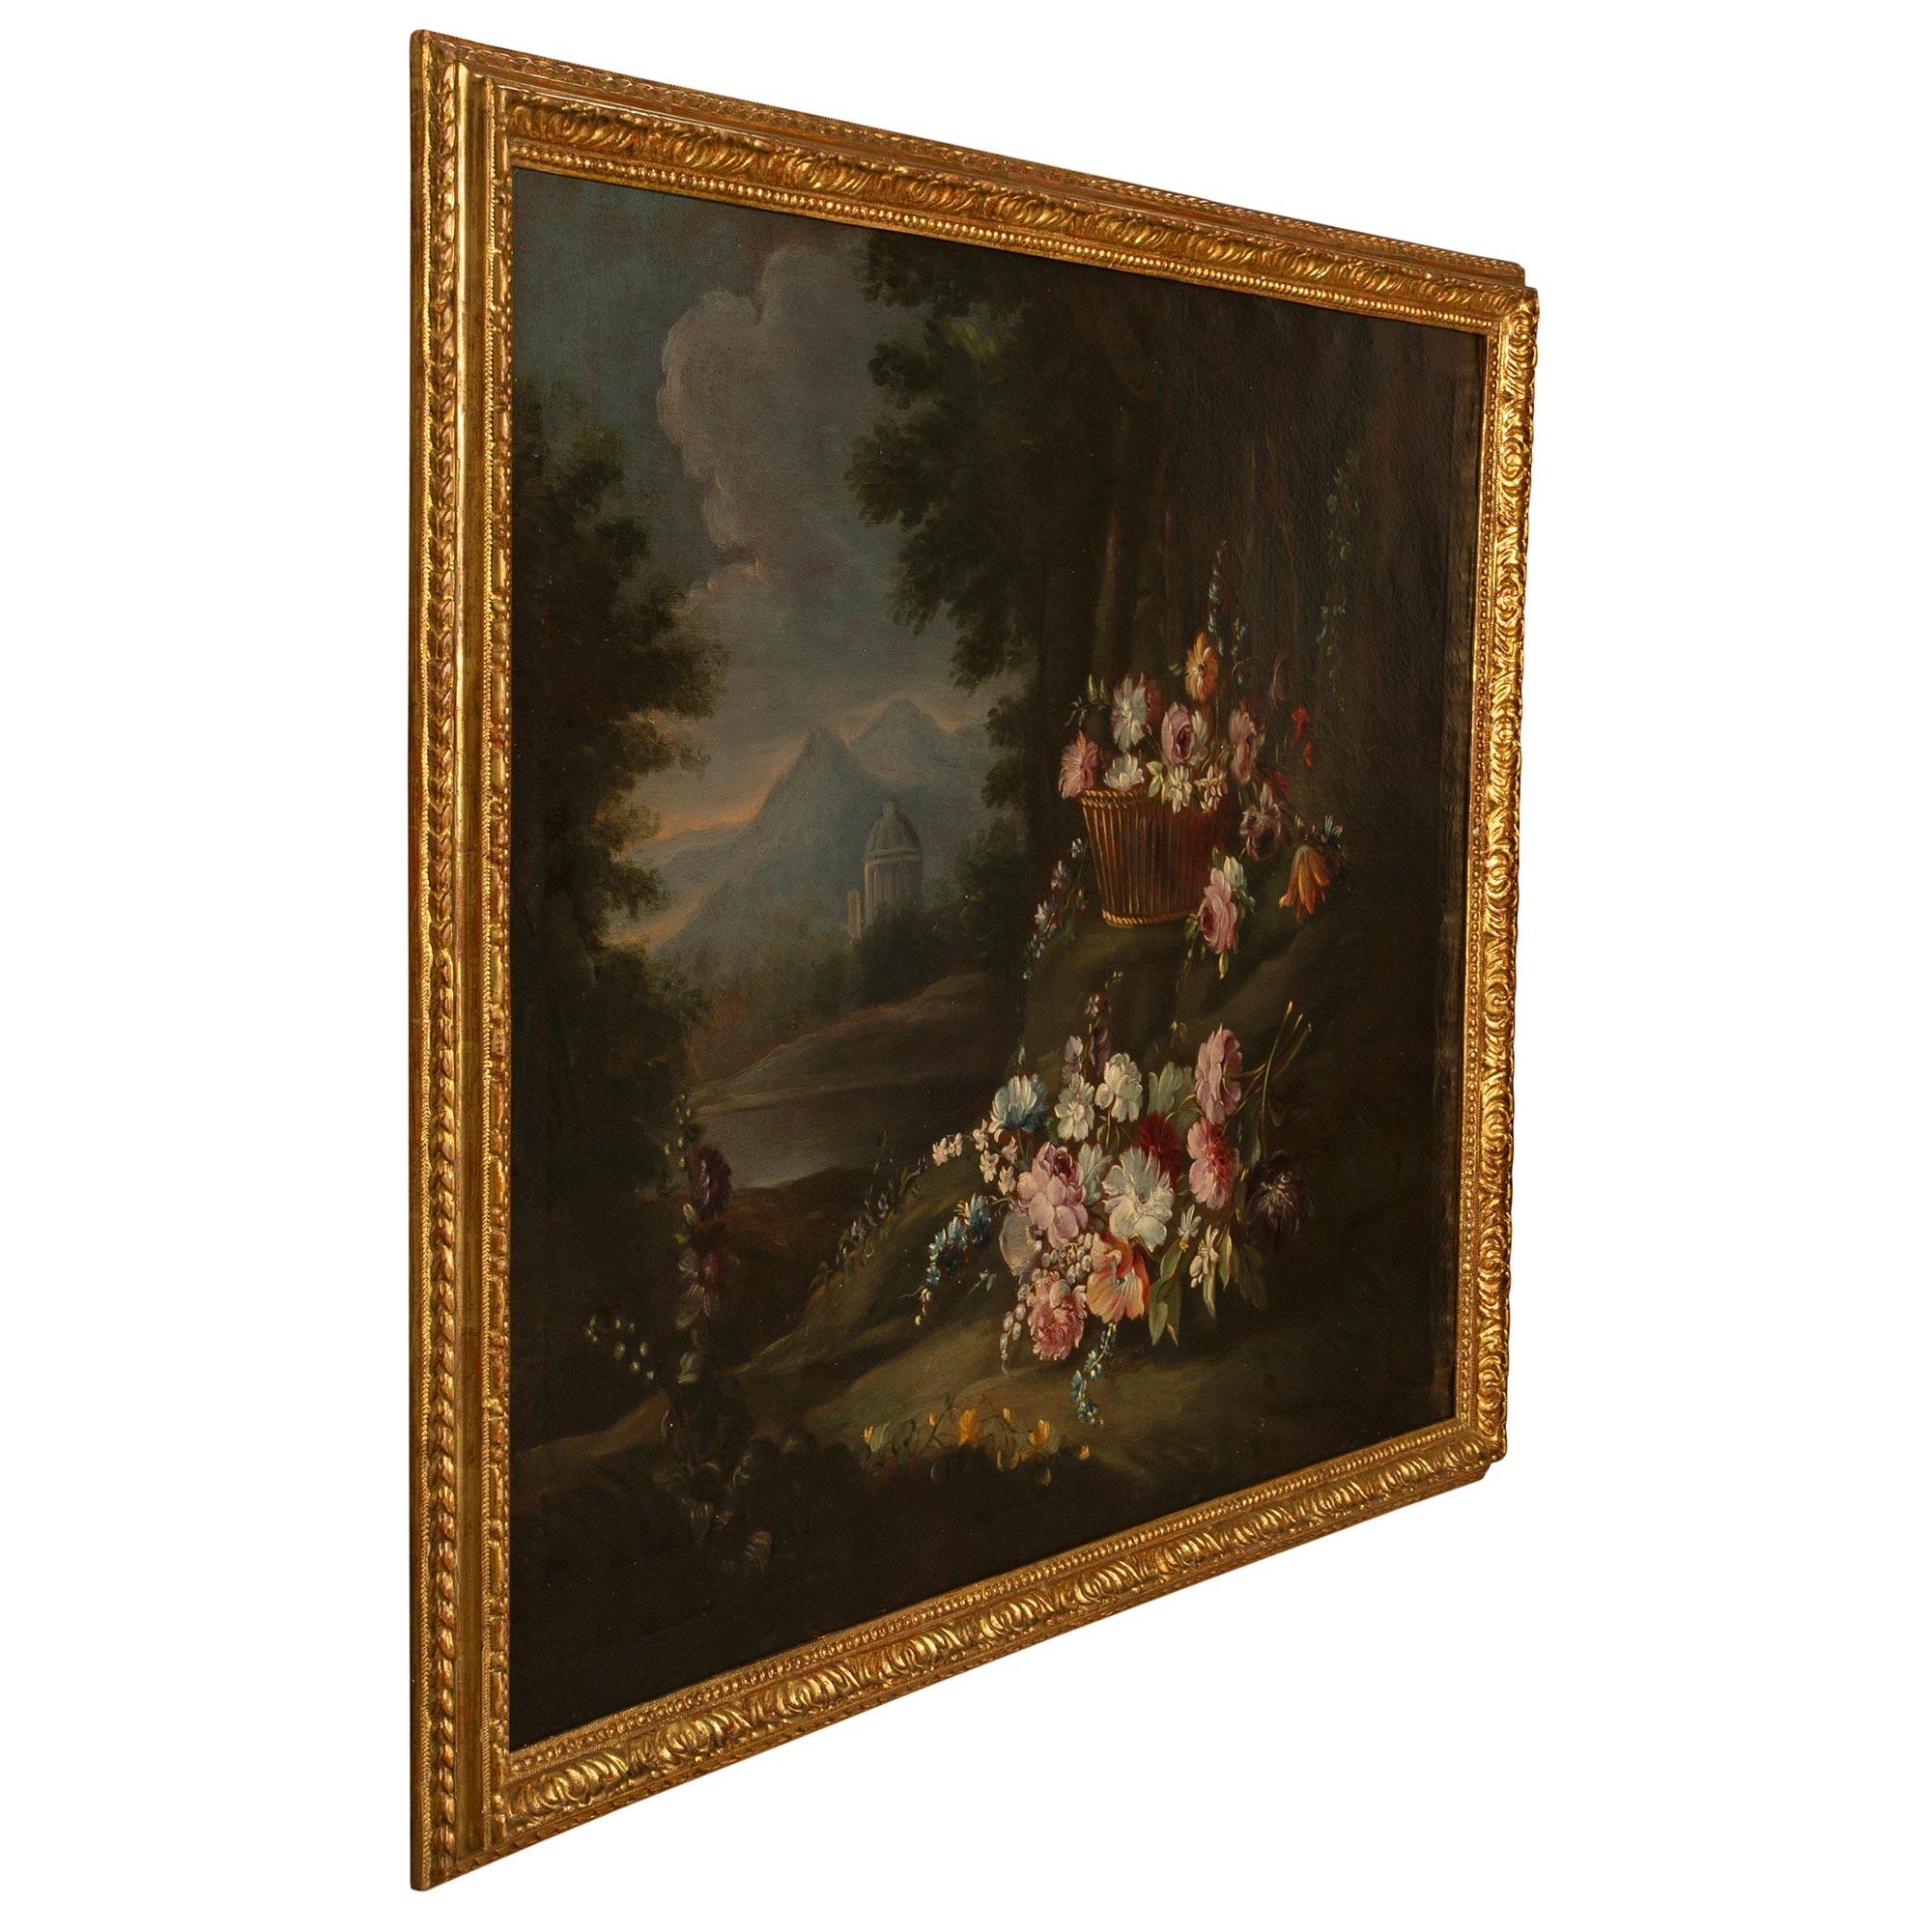 Eine schöne und charmante italienische 18. Jahrhundert Louis XVI Zeitraum Öl auf Leinwand Stillleben Gemälde in seinem ursprünglichen Goldholz Rahmen. Das Gemälde zeigt wunderschön ausgeführte und fein detaillierte bunte Blumen auf einer